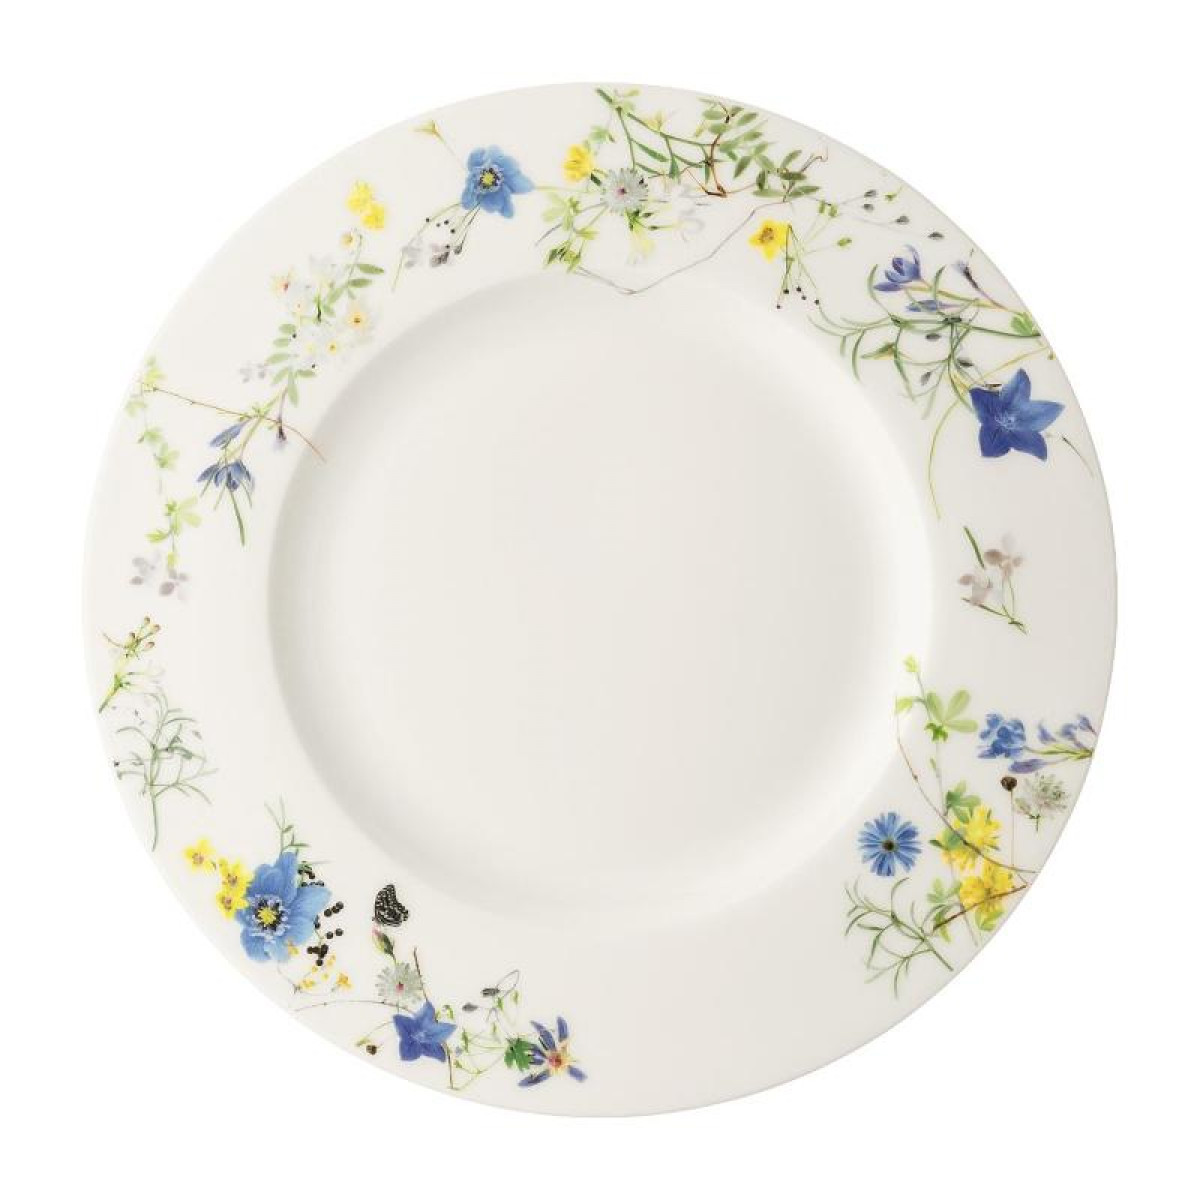 Тарелка закусочная с бортом Rosenthal Альпийские цветы 23 см тарелка суповая rosenthal альпийские цветы 21 см